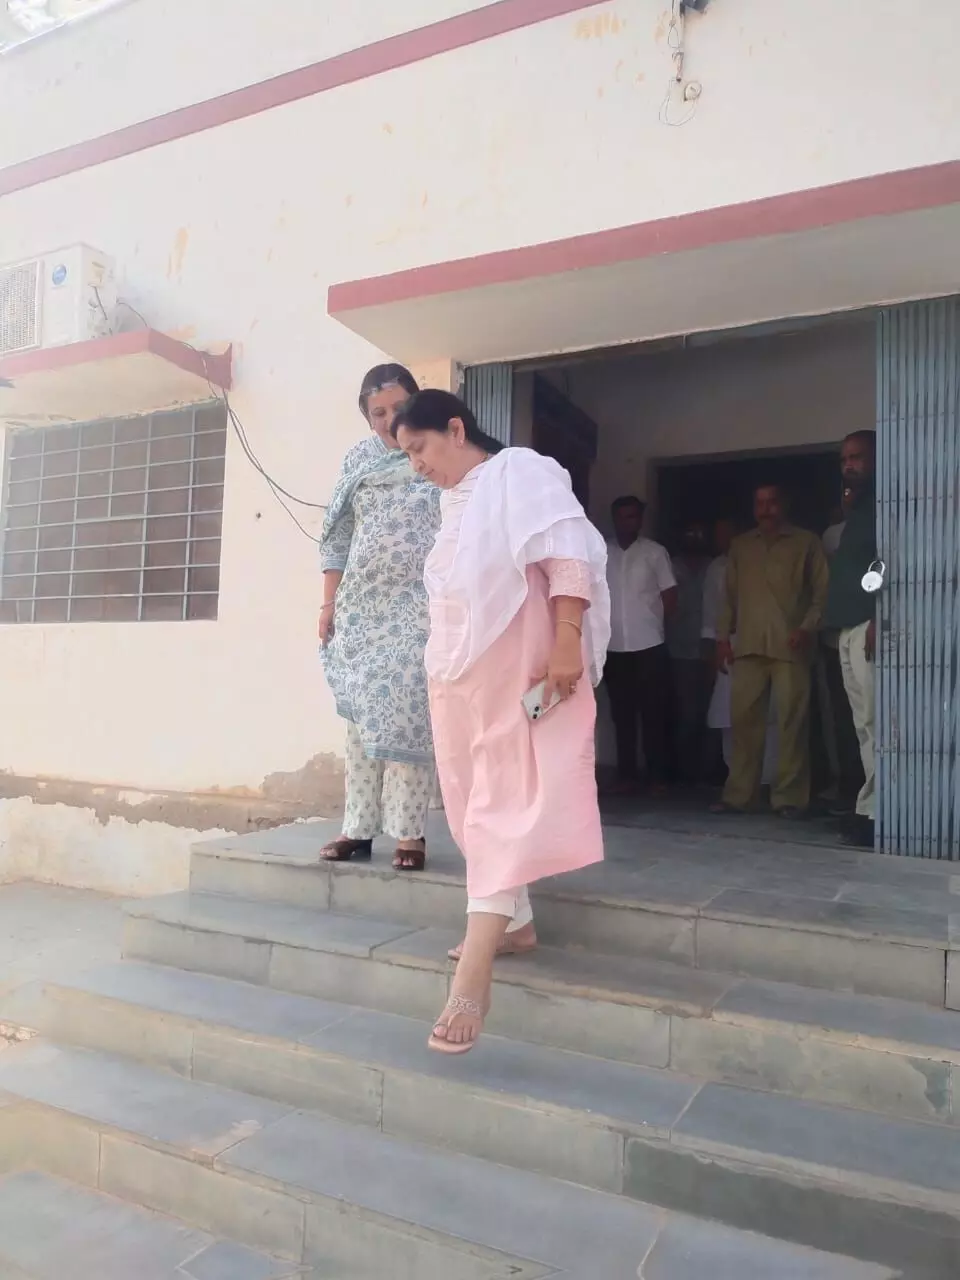 Churu : जिला कलेक्टर पुष्पा सत्यानी ने सरदारशहर में उपखंड कार्यालय तथा पंचायत समिति का किया निरीक्षण